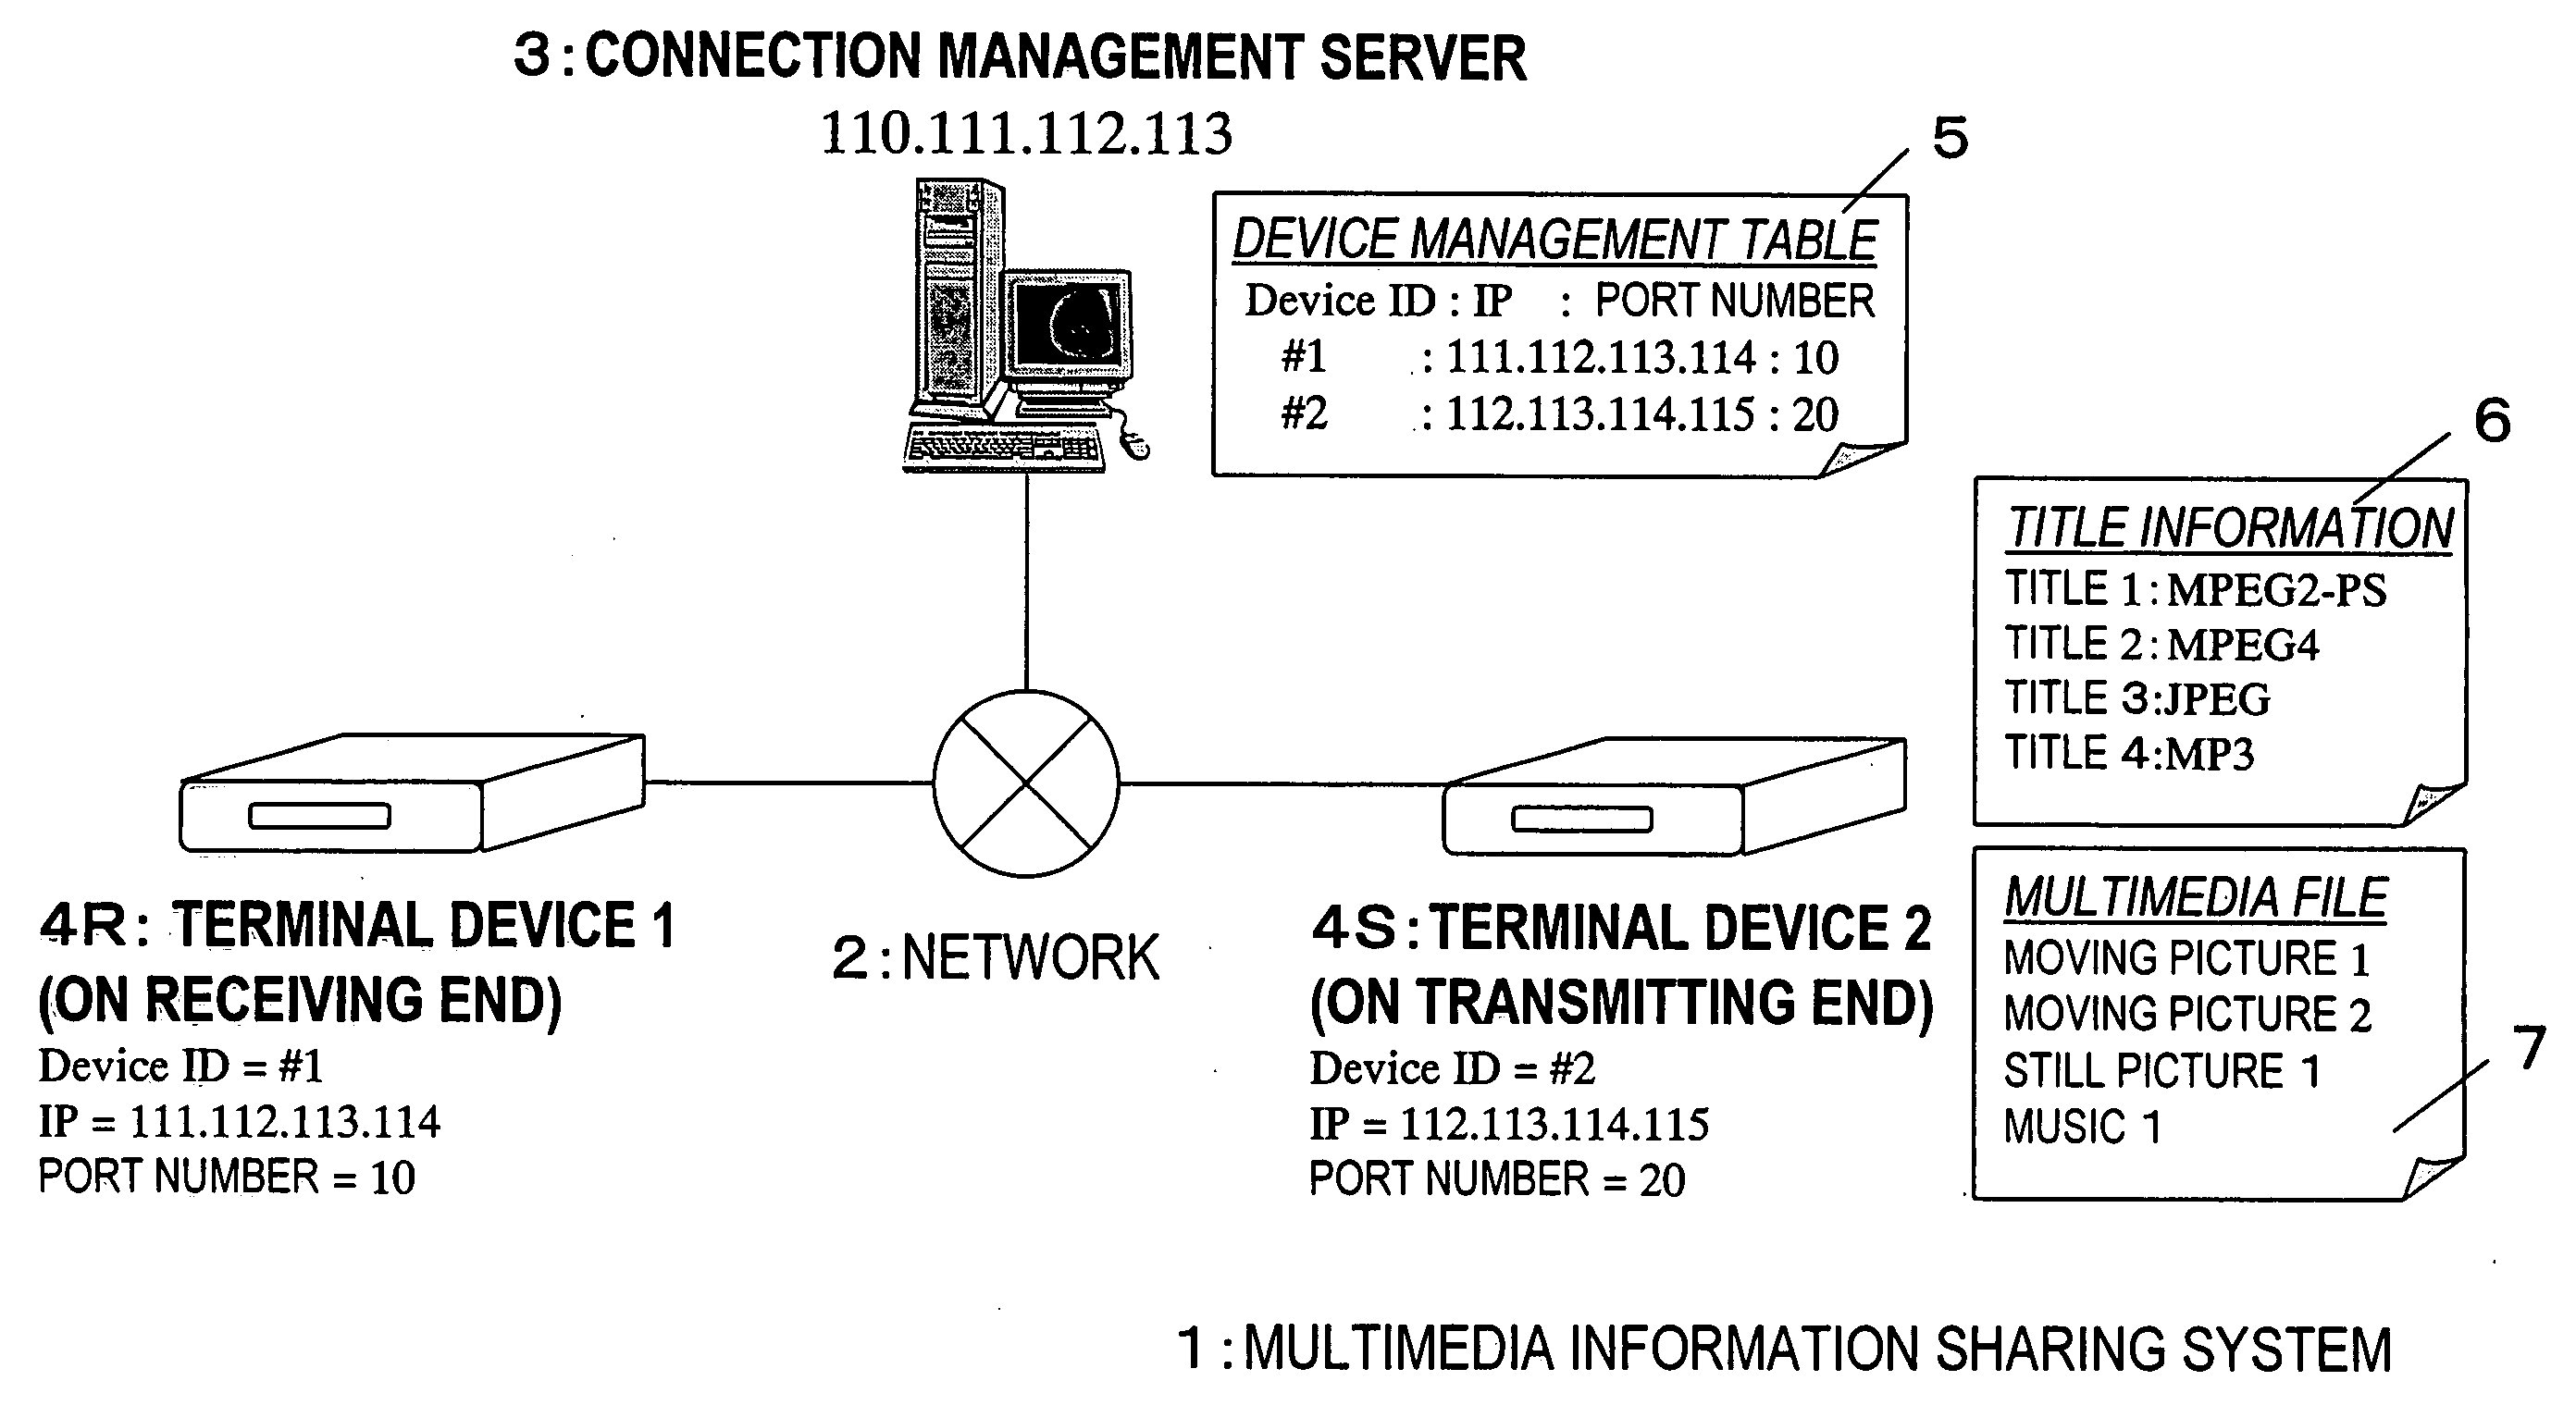 Multi-medium information sharing system